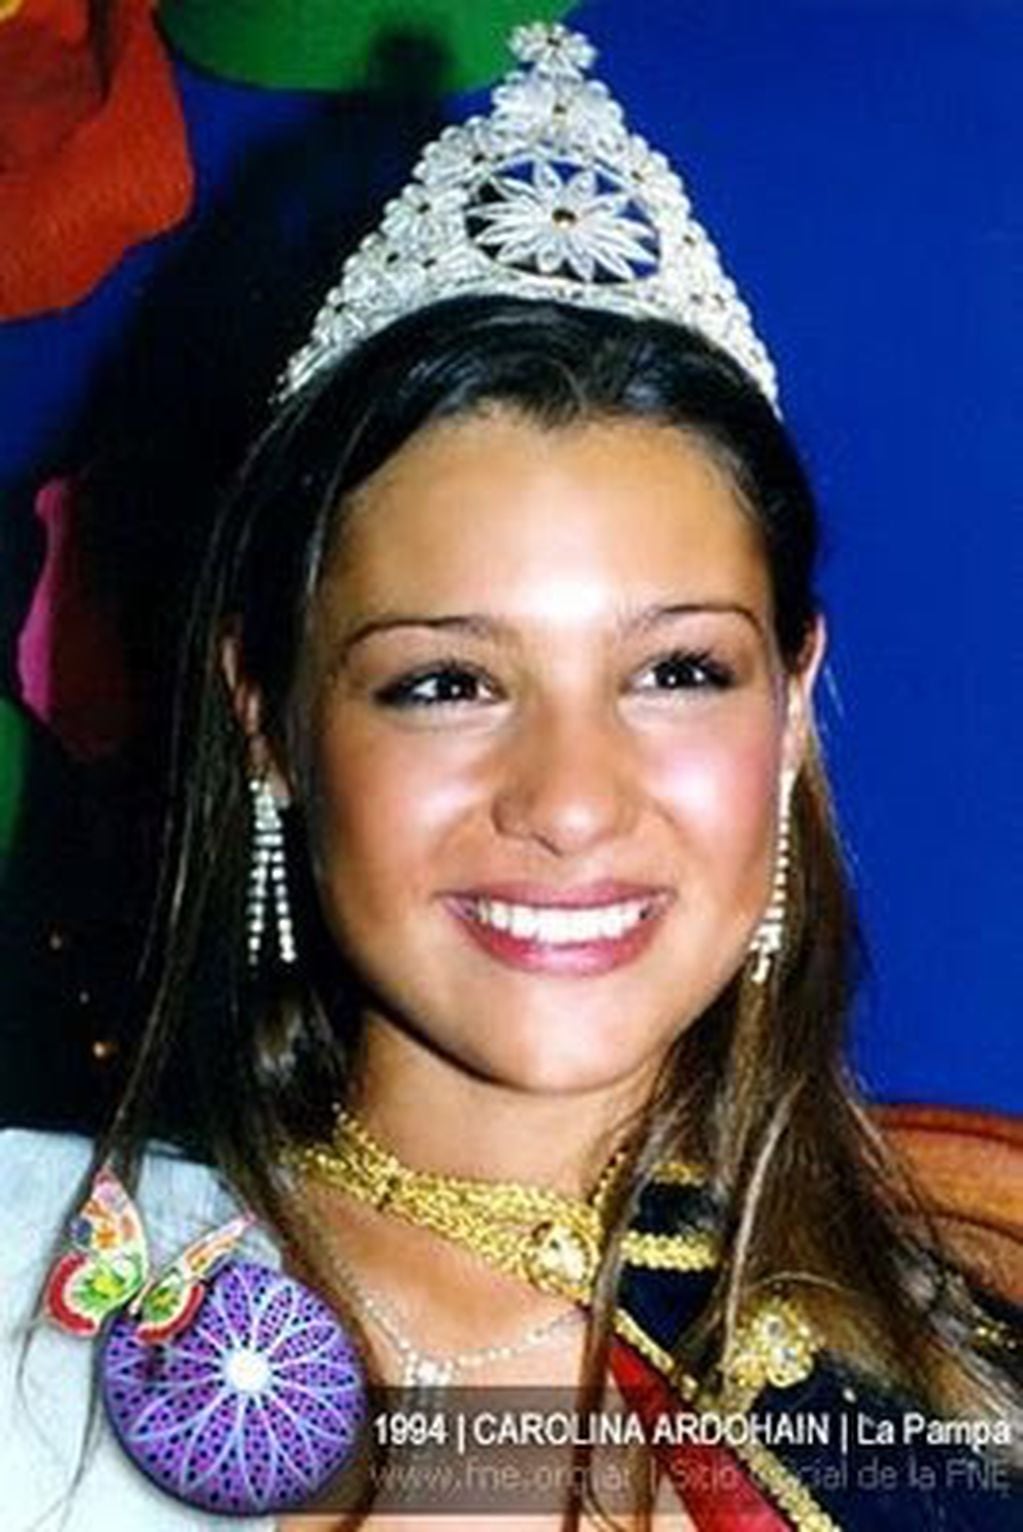 Pampita comenzó su carrera poco después de ser elegida Reina Nacional de los Estudiantes en el año 1994